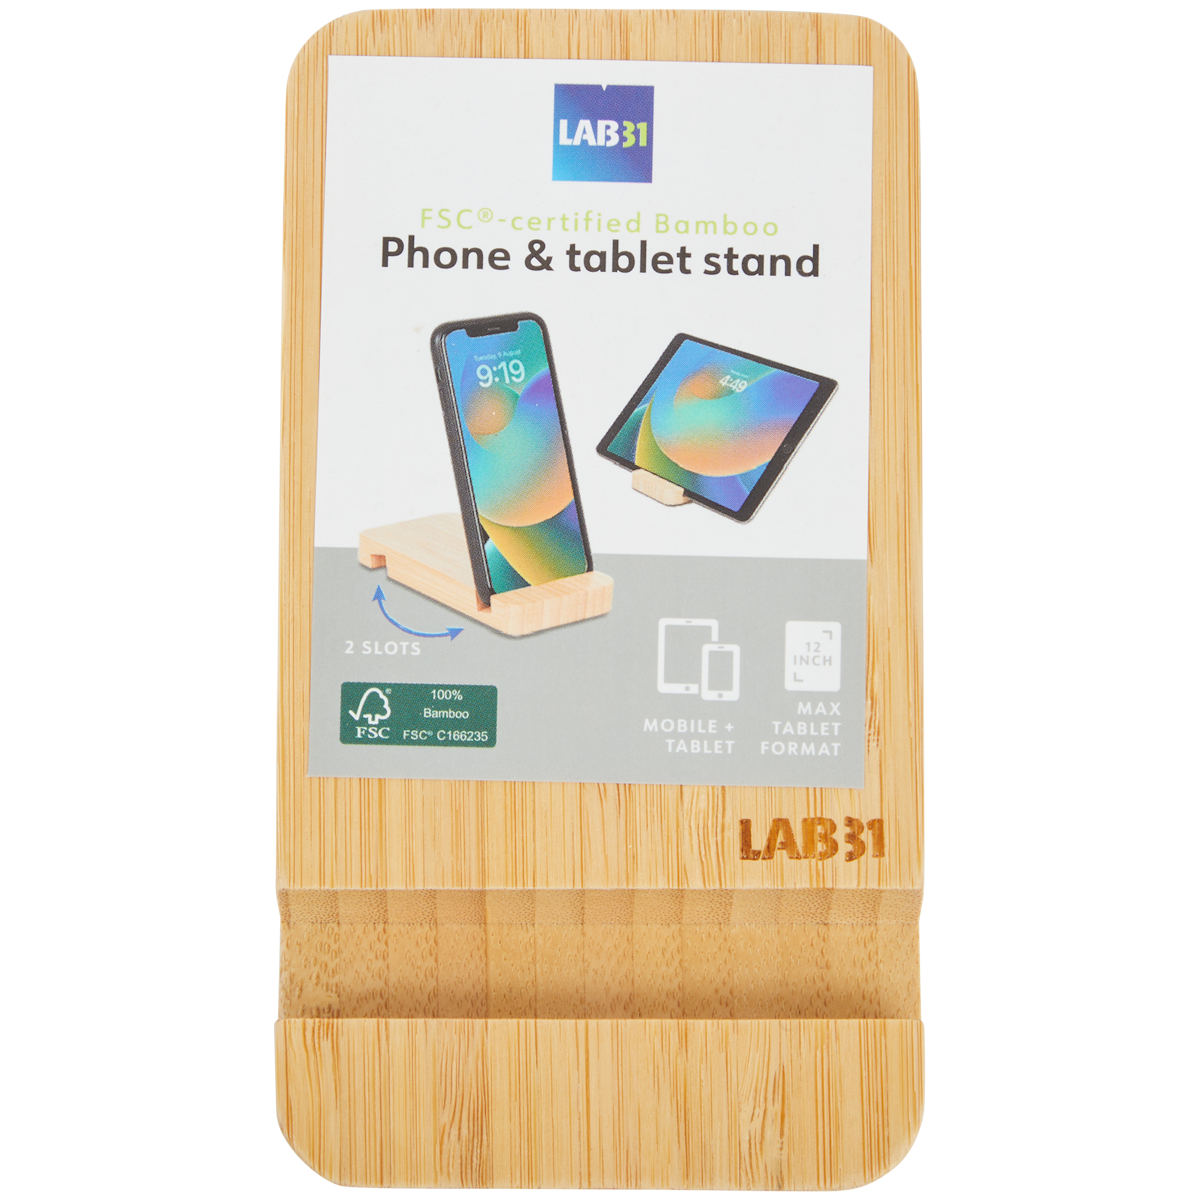 Soporte para tablet y smartphone de bambú Lab31